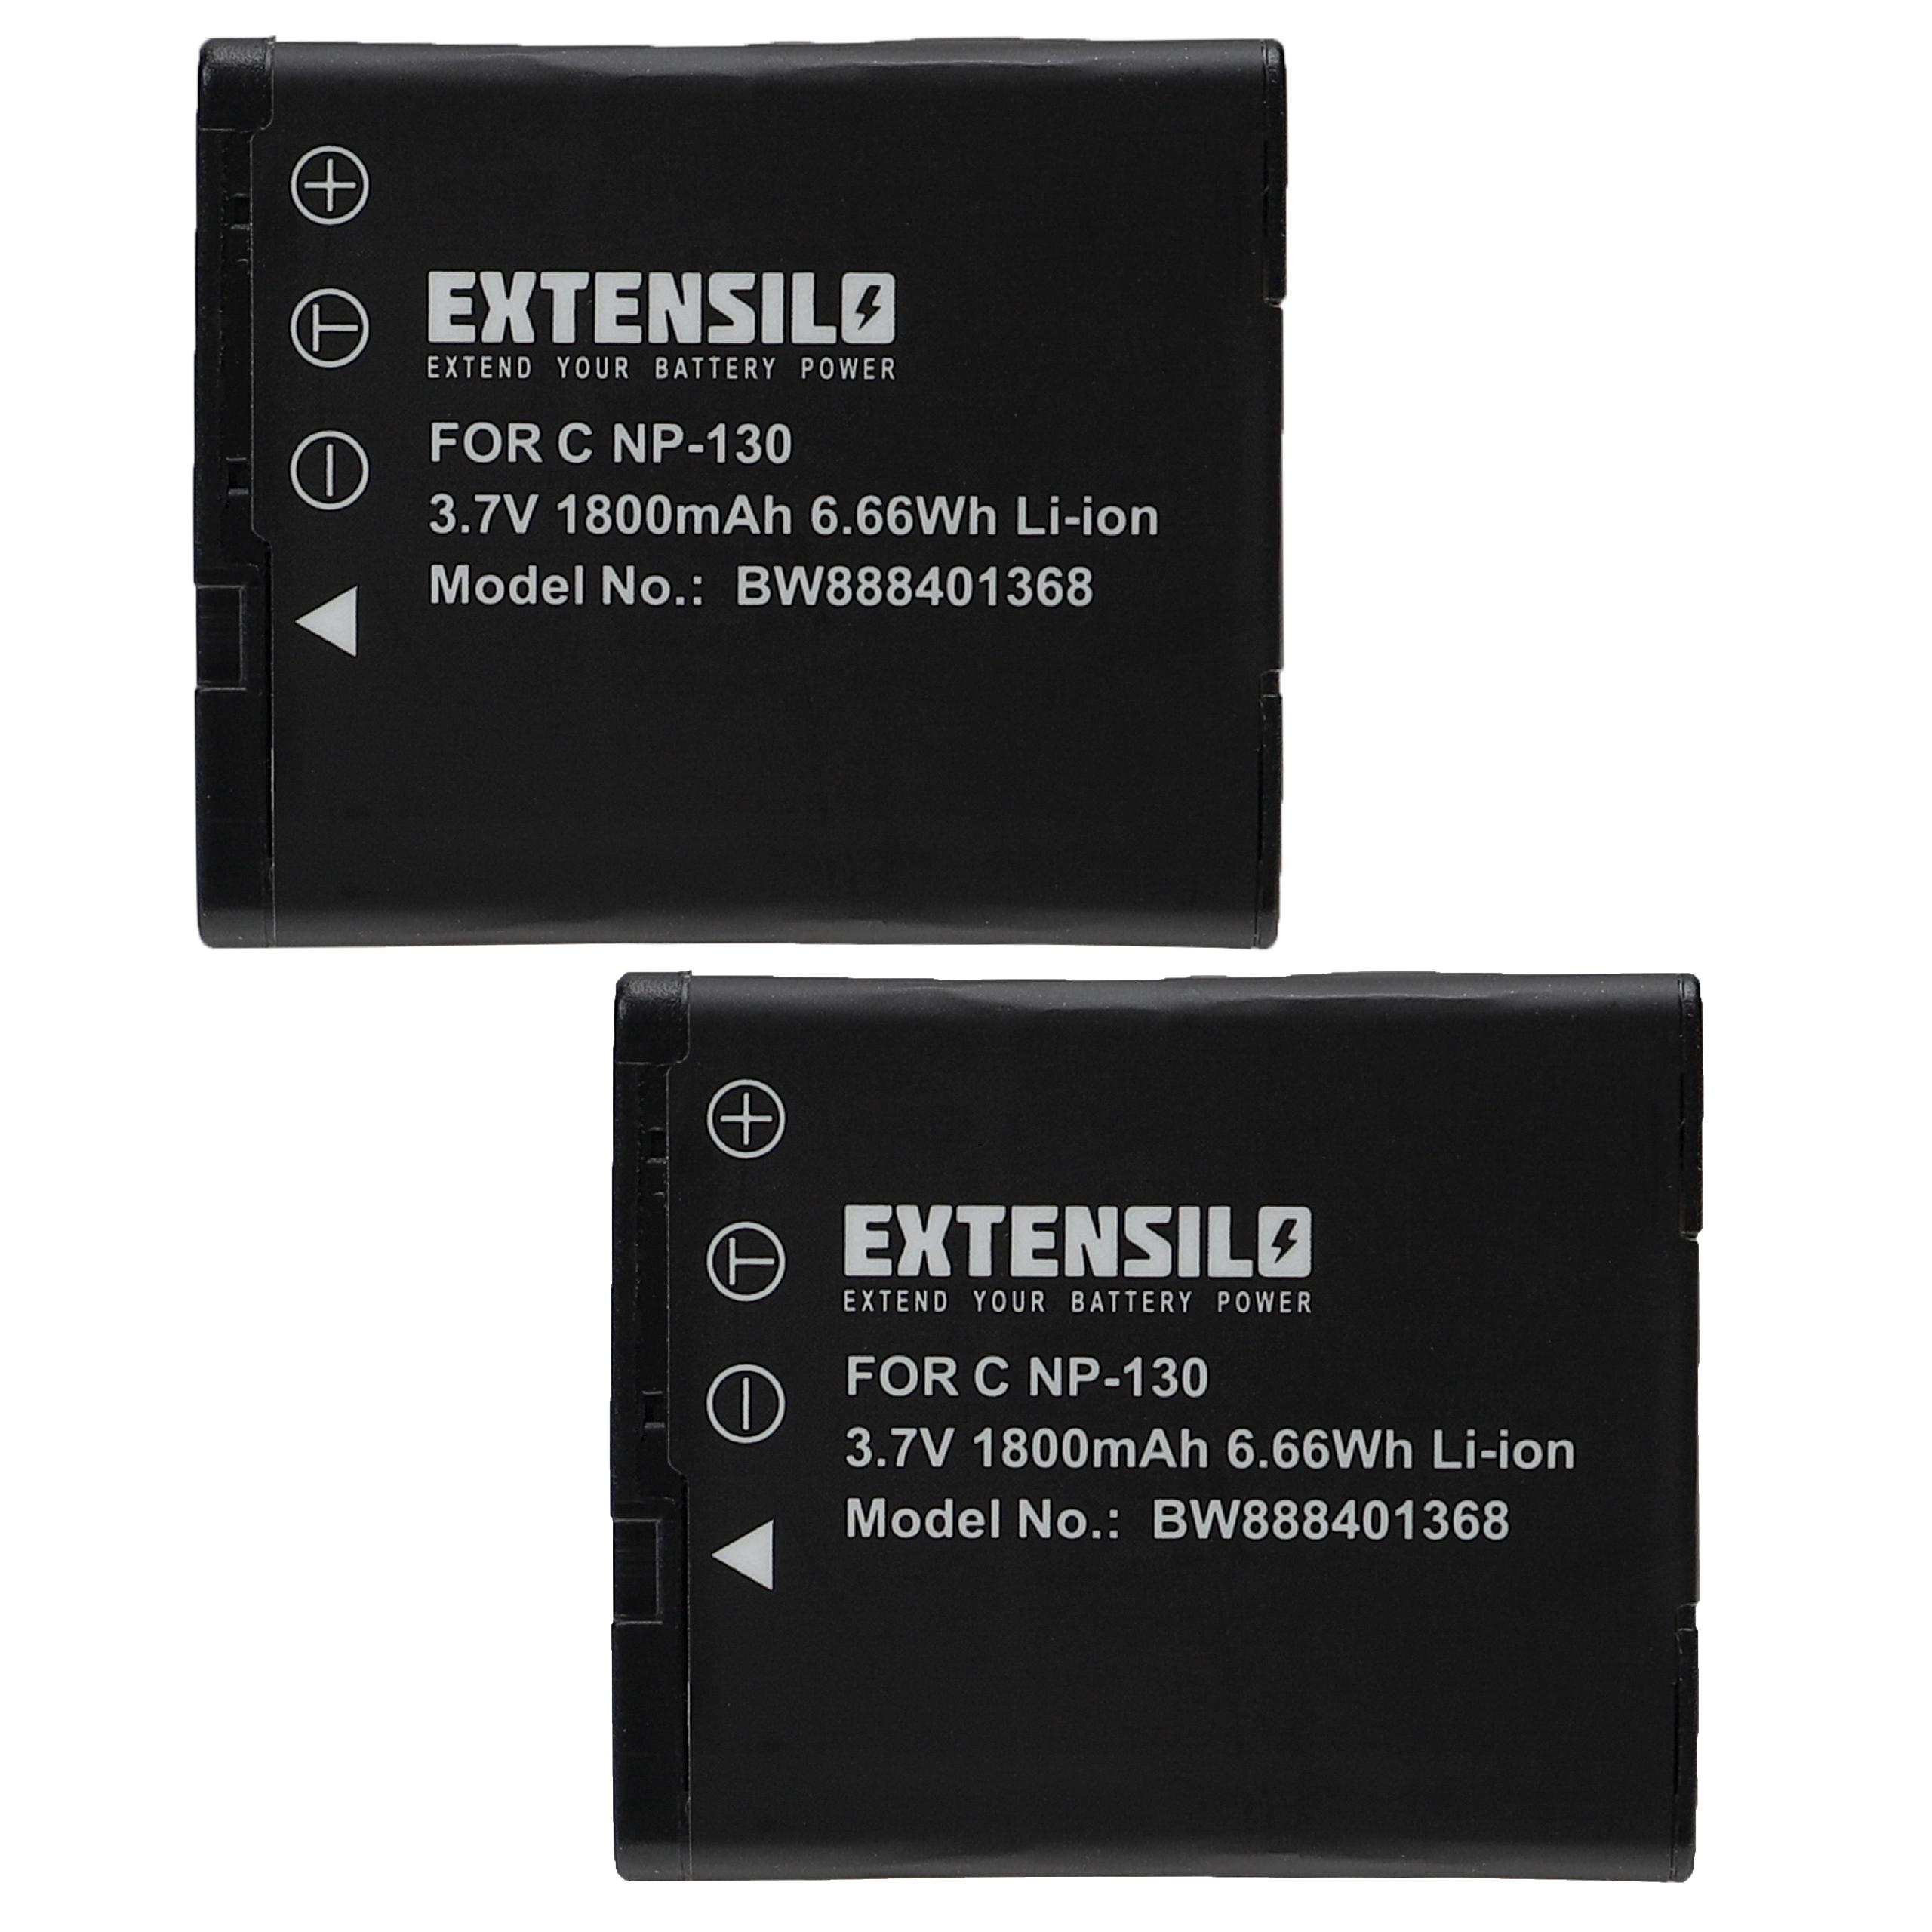 EX-ZR300WE, EX-ZR310, EX-ZR310GD, Exilim - kompatibel EX-ZR310RD Casio Akku mit EX-ZR310BK, 1800 EXTENSILO Li-Ion EX-ZR300RD, Kamera,